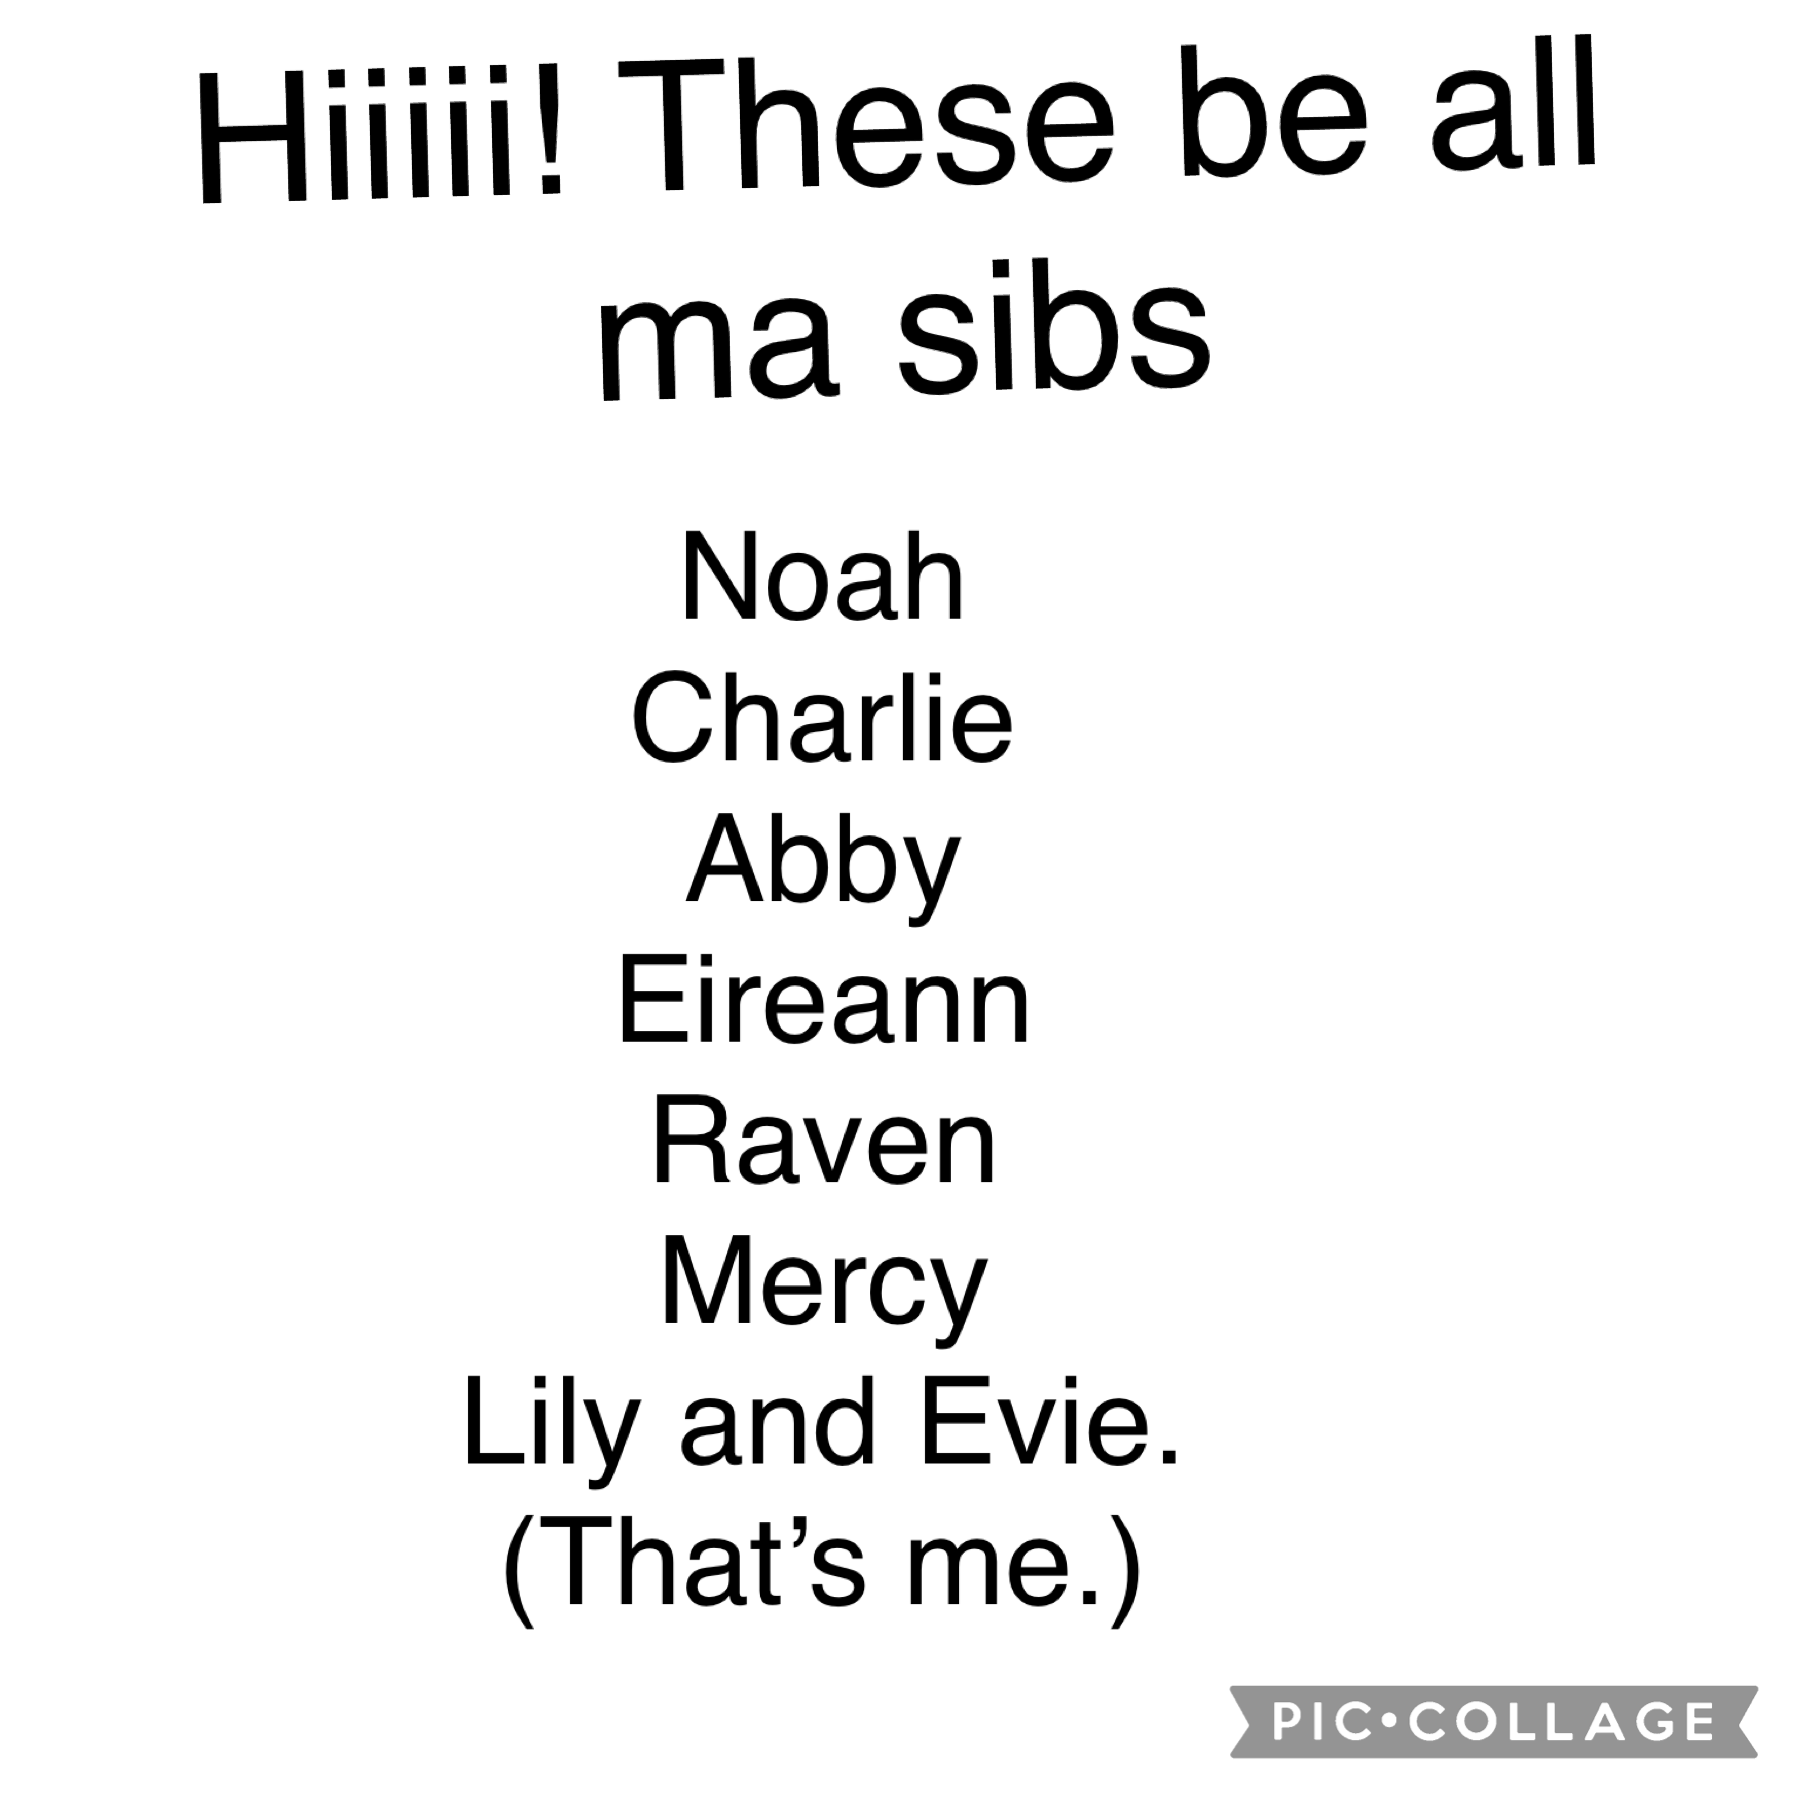 I got ALOTTTT of sibs. How many do u have?